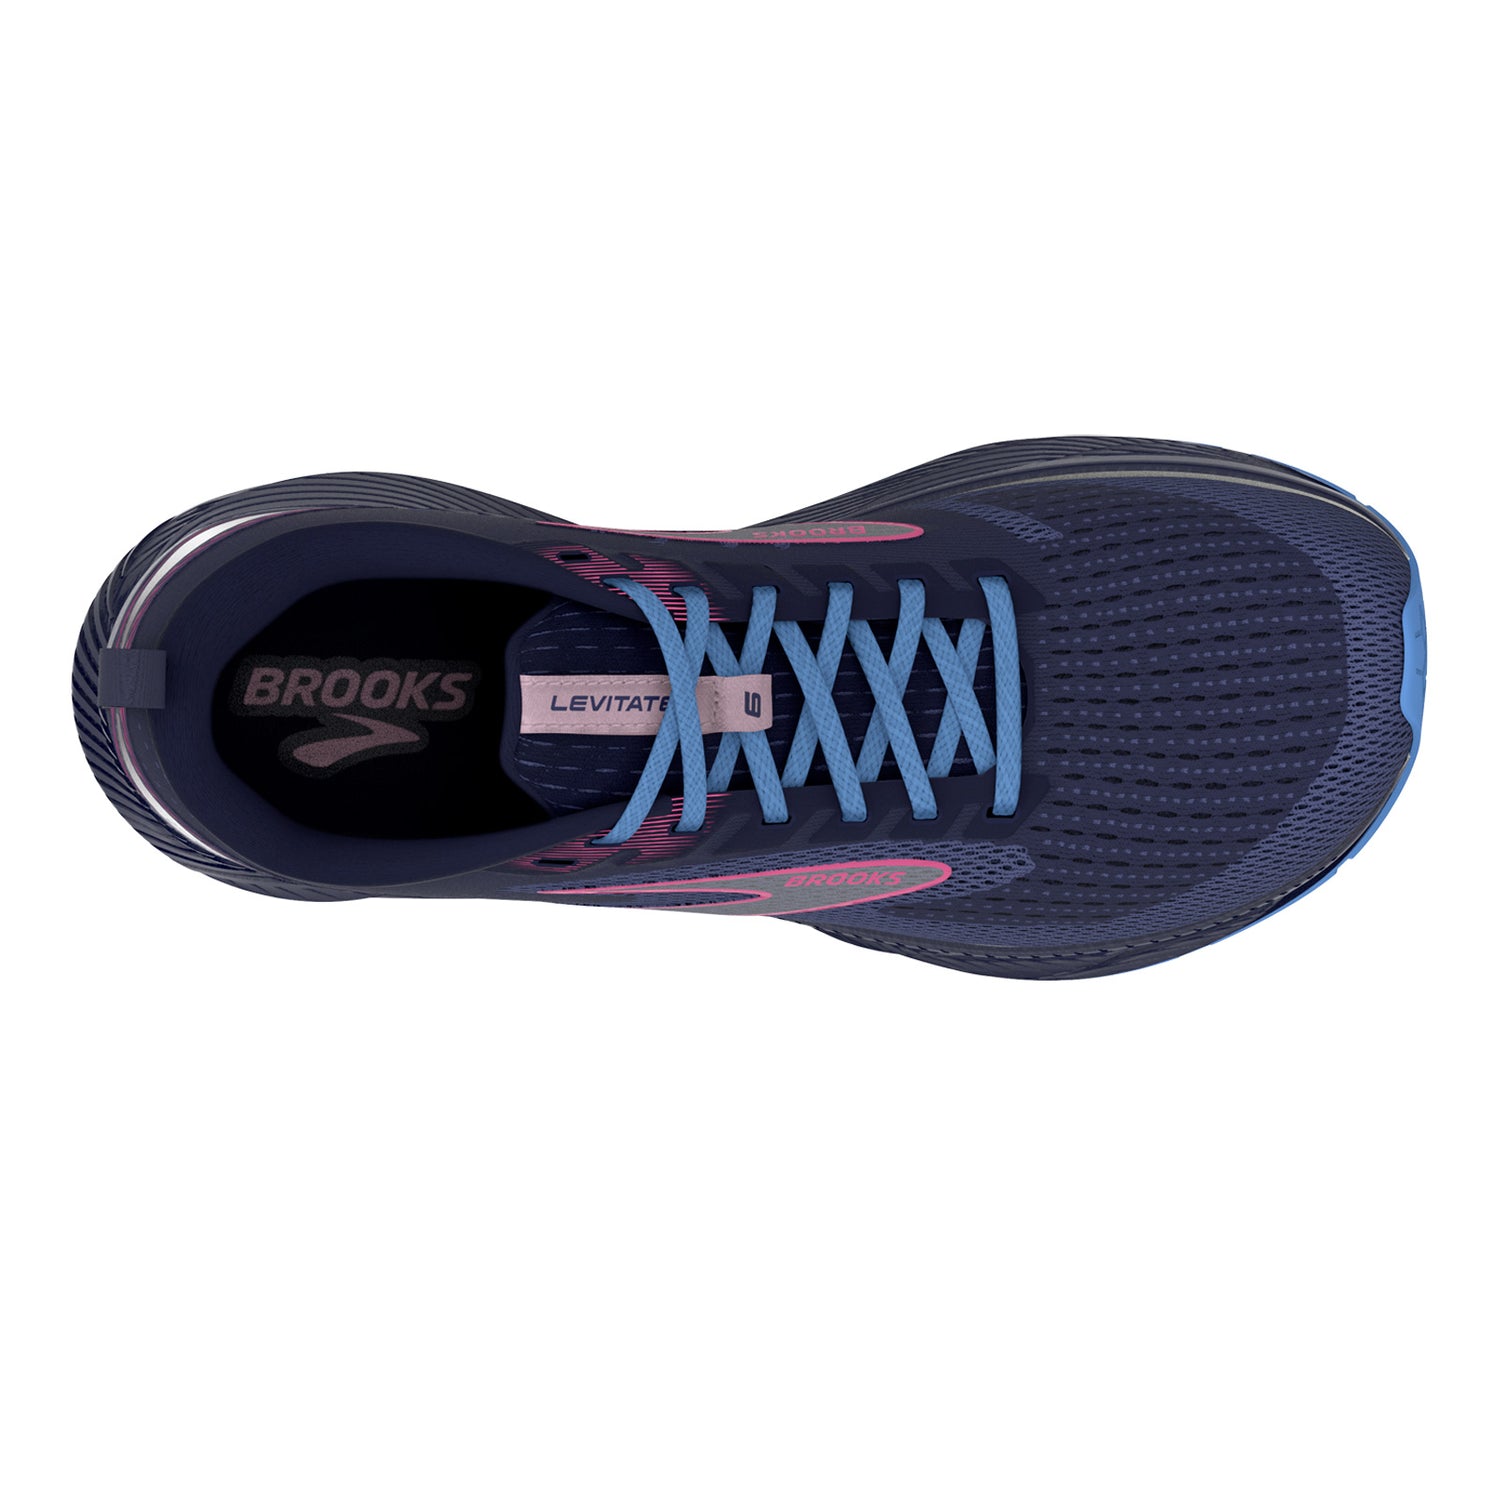 Peltz Shoes  Women's Brooks Levitate 6 Running Shoe Navy/Pink 120383 1B 463